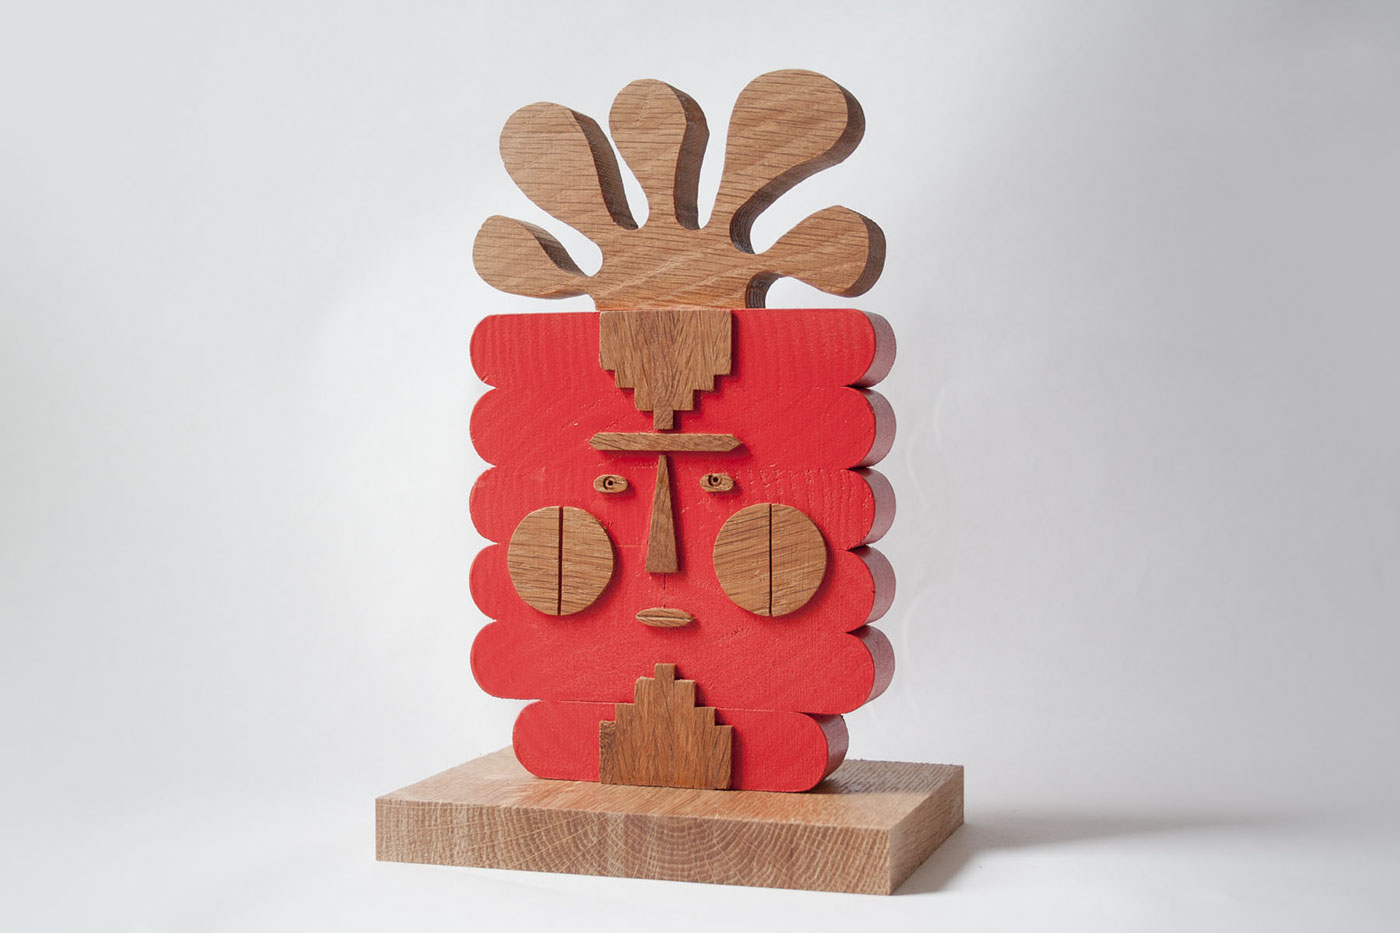 sculpture wood wooden characters figures art